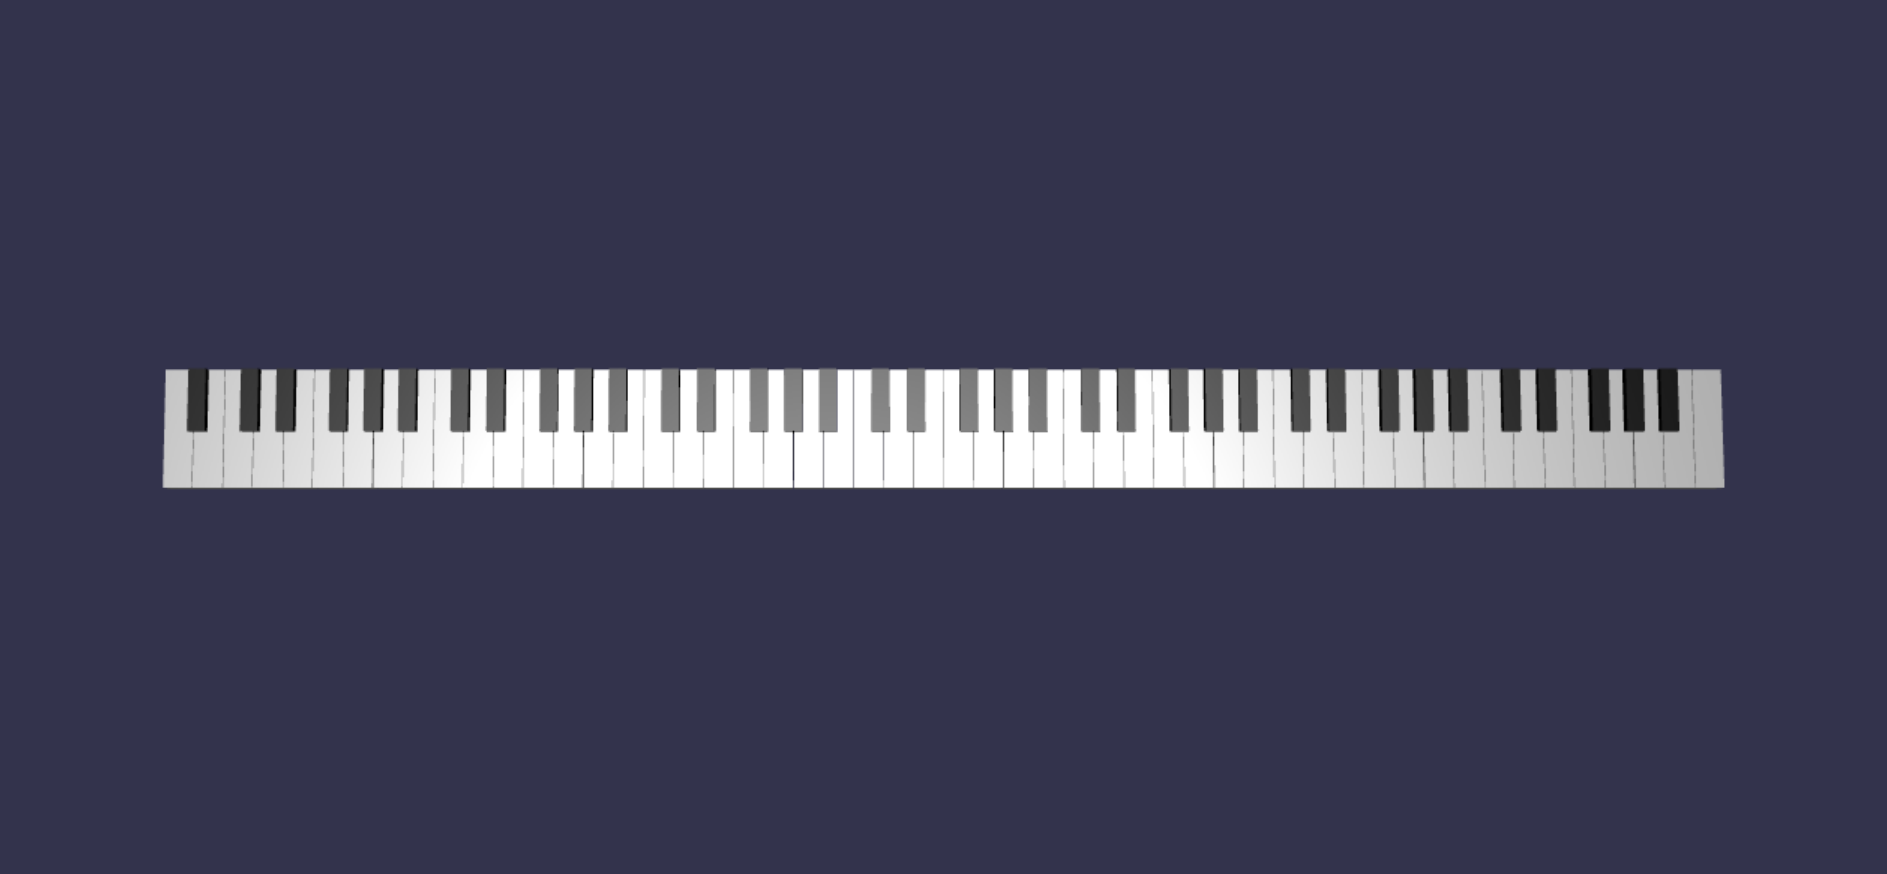 完全なピアノの鍵盤のメッシュ